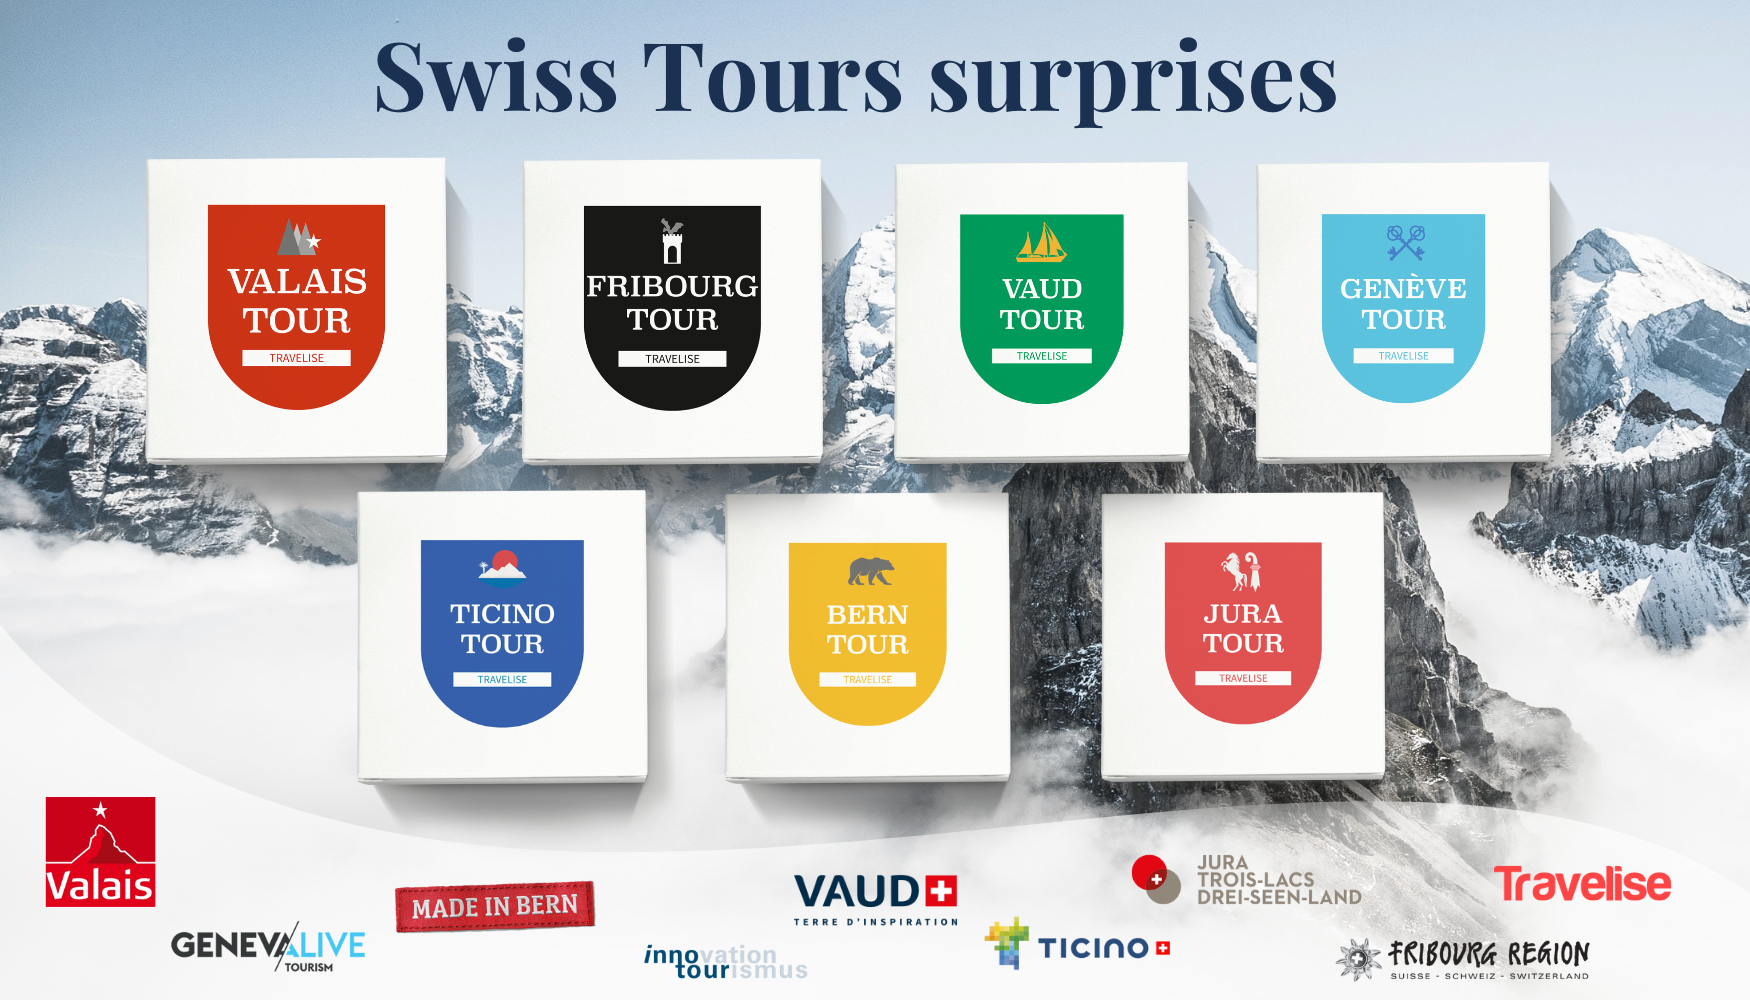 Swiss Tours Surprises